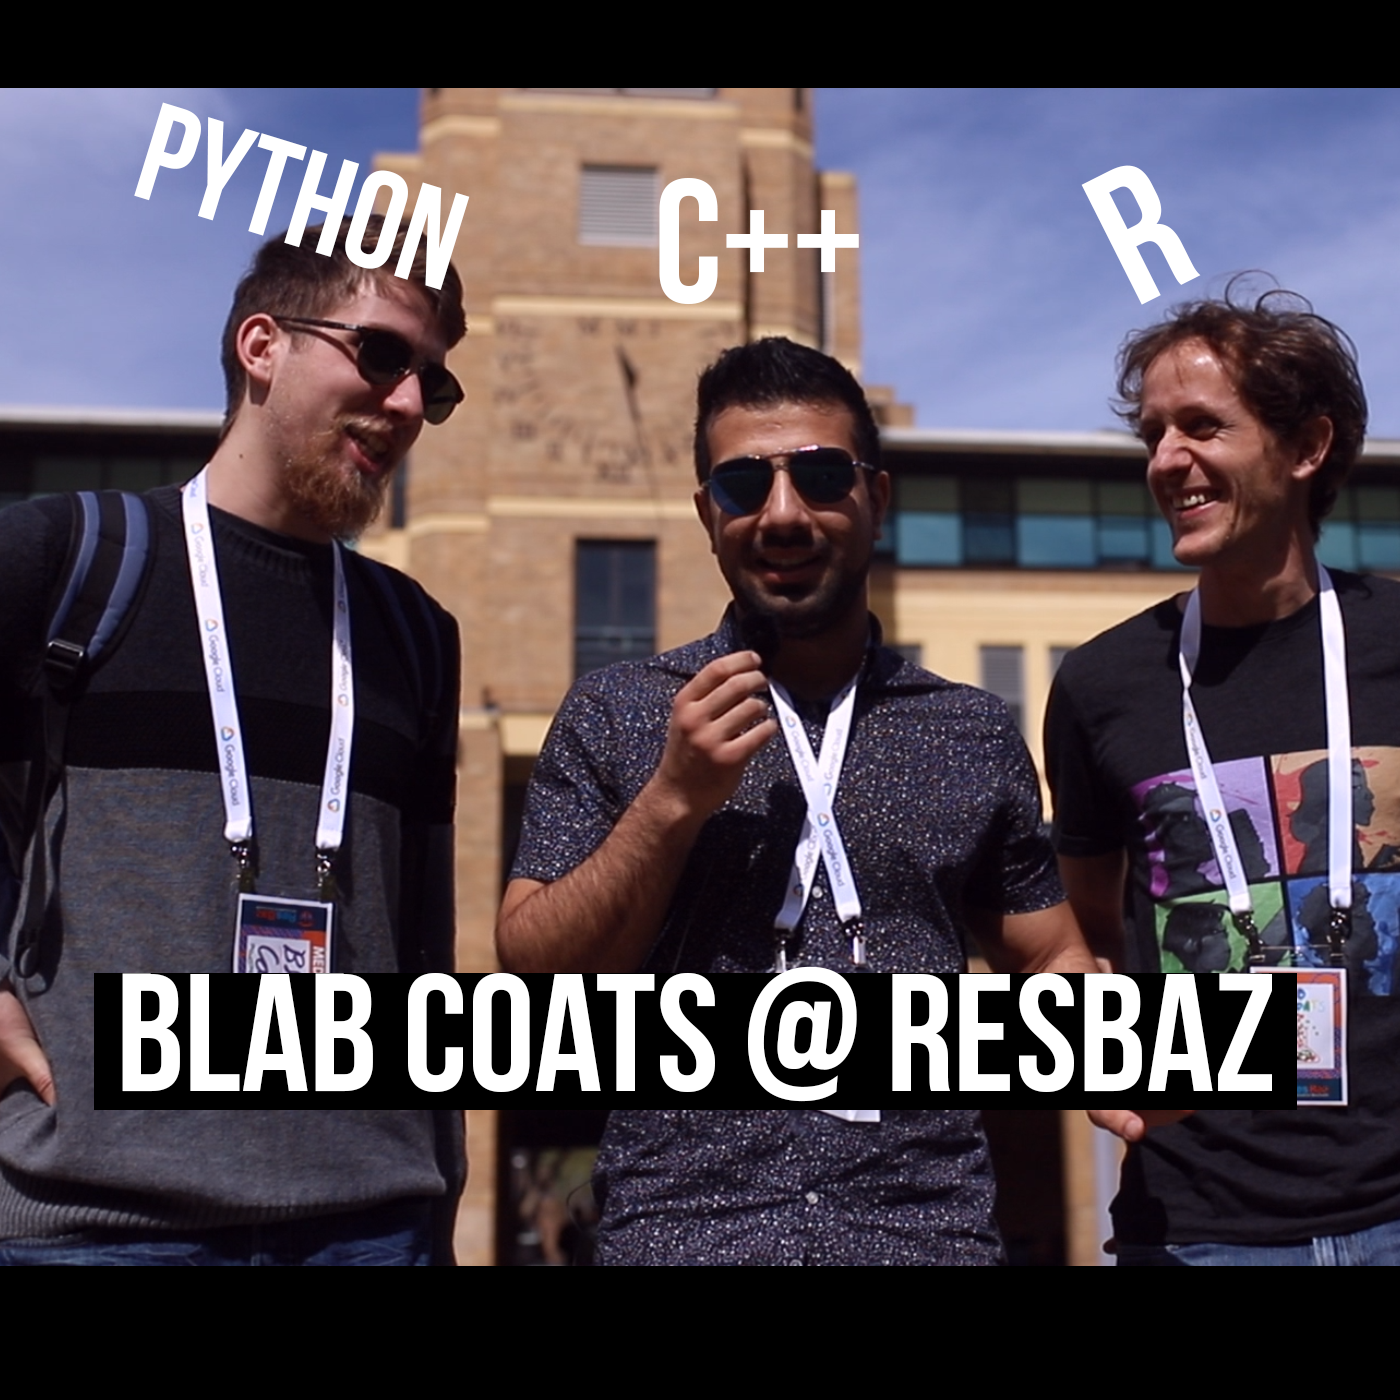 6.4 Blab Coats at ResBaz